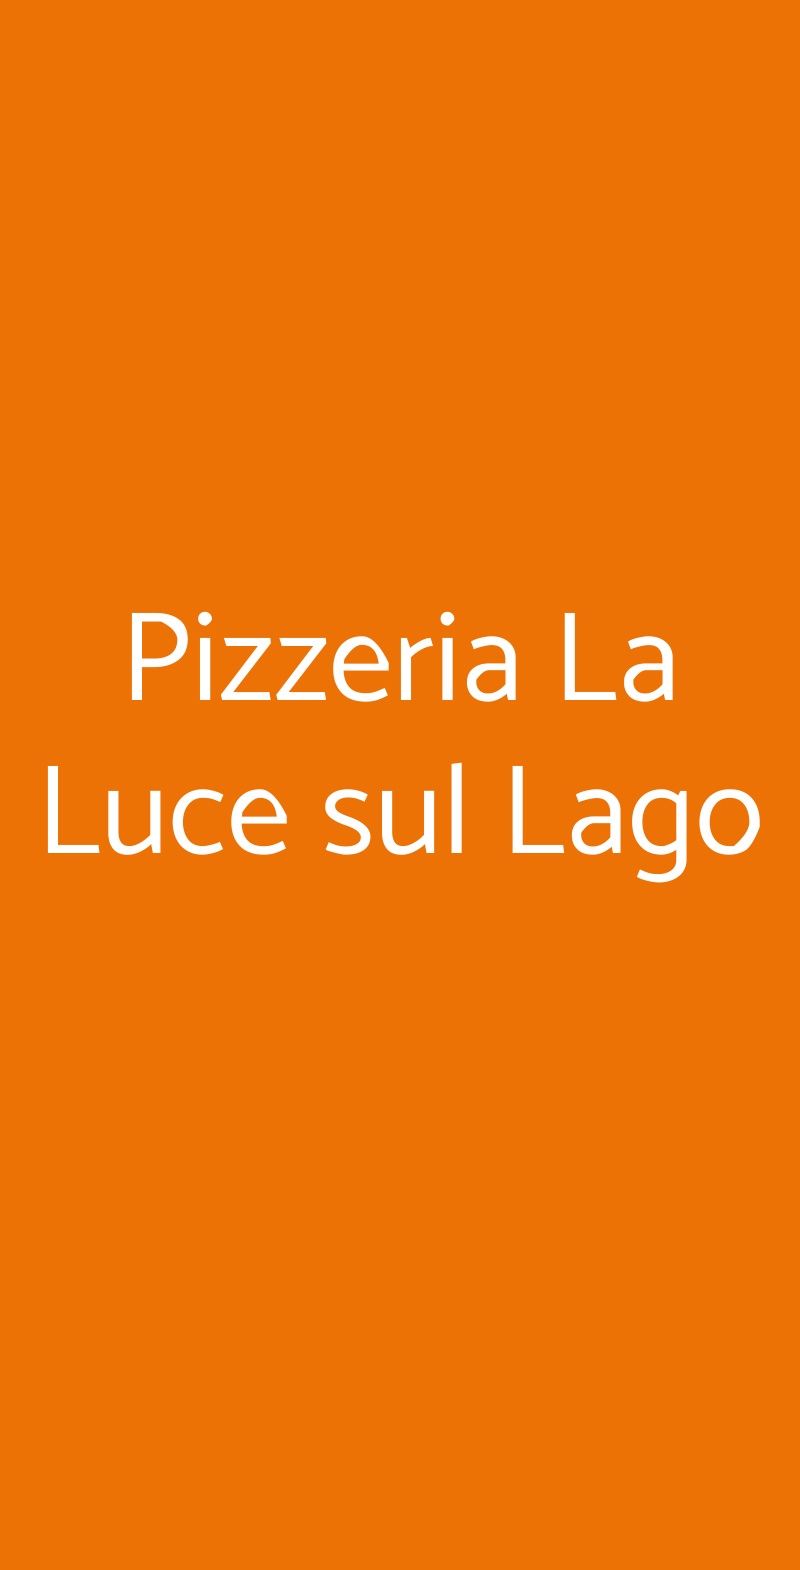 Pizzeria La Luce sul Lago Manerba del Garda menù 1 pagina